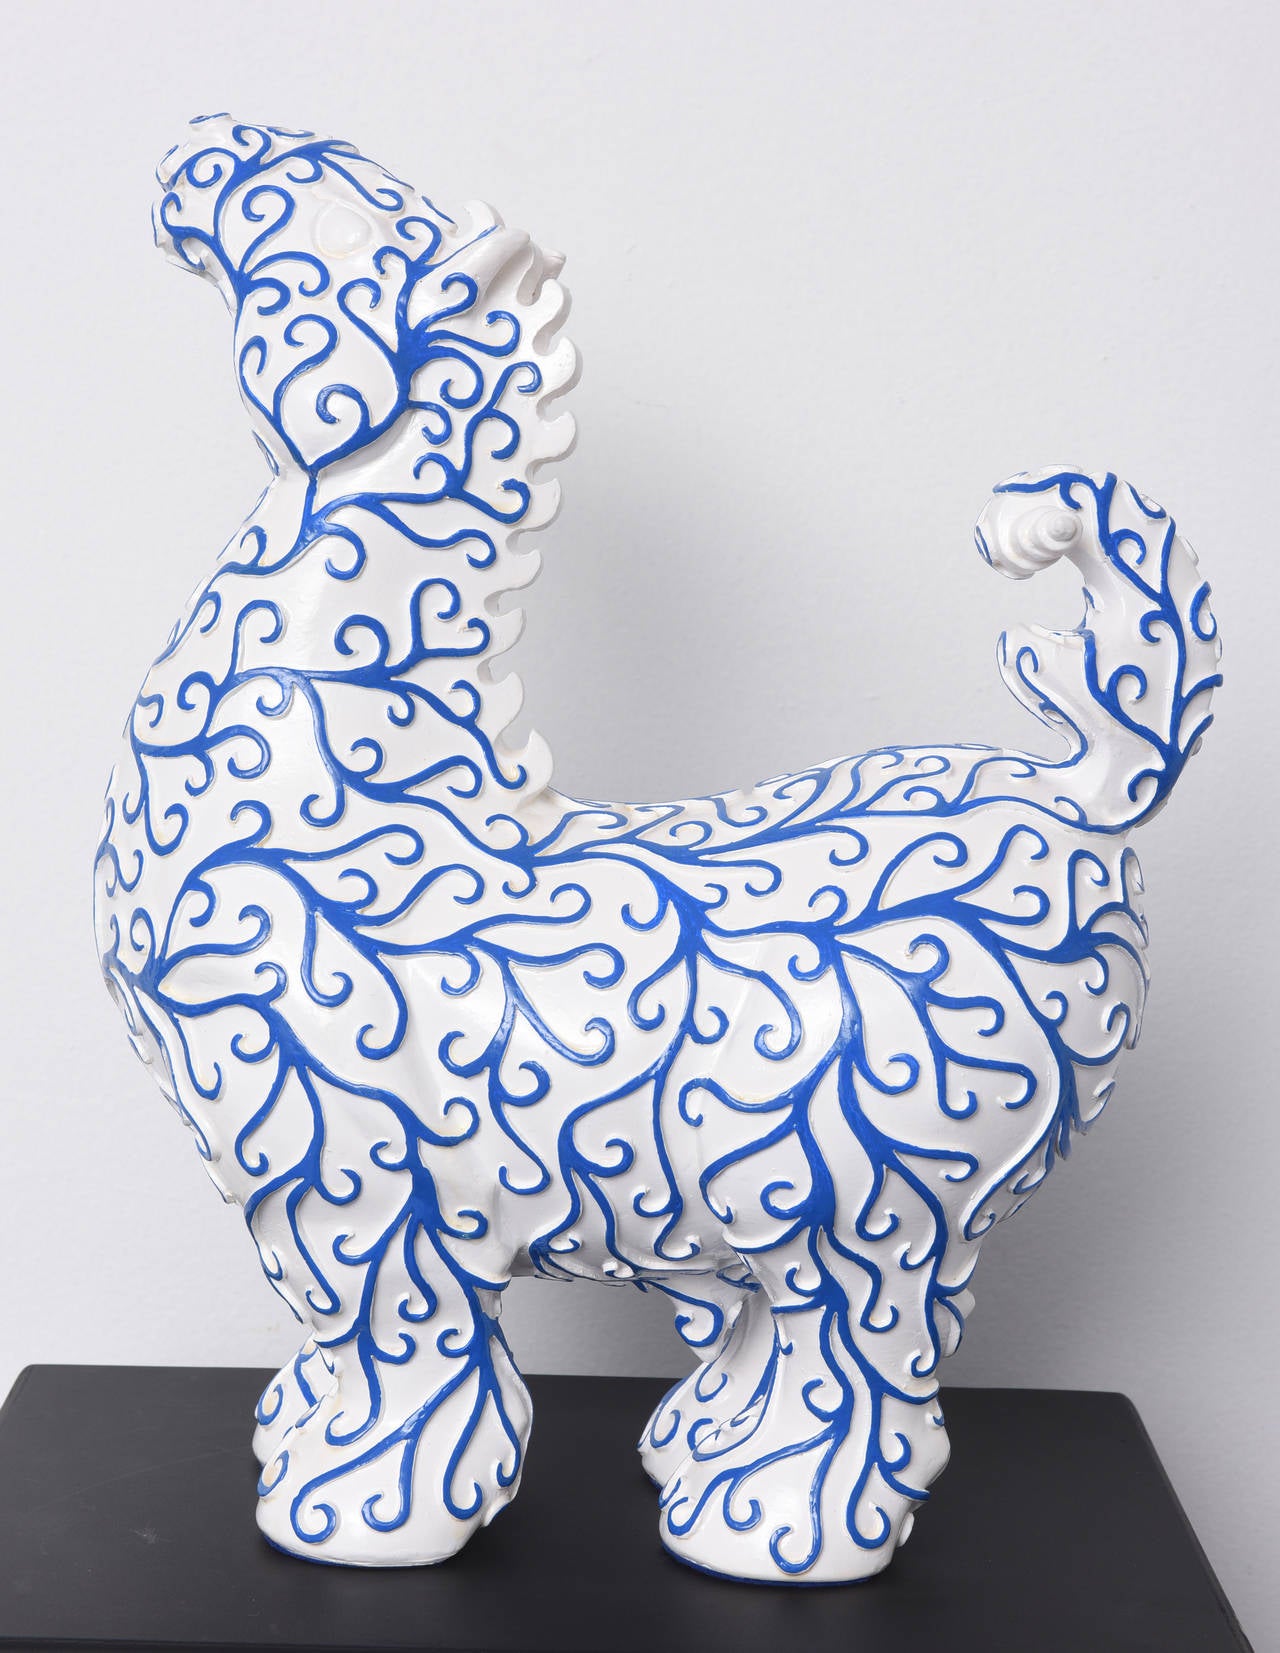 Arabesques Horse est une sculpture en résine réalisée par Patrick Schumacher, un artiste contemporain français. Cette sculpture de cheval blanc avec des motifs "arabesques" bleus fait référence aux origines syriennes de l'artiste. 
"À travers mon